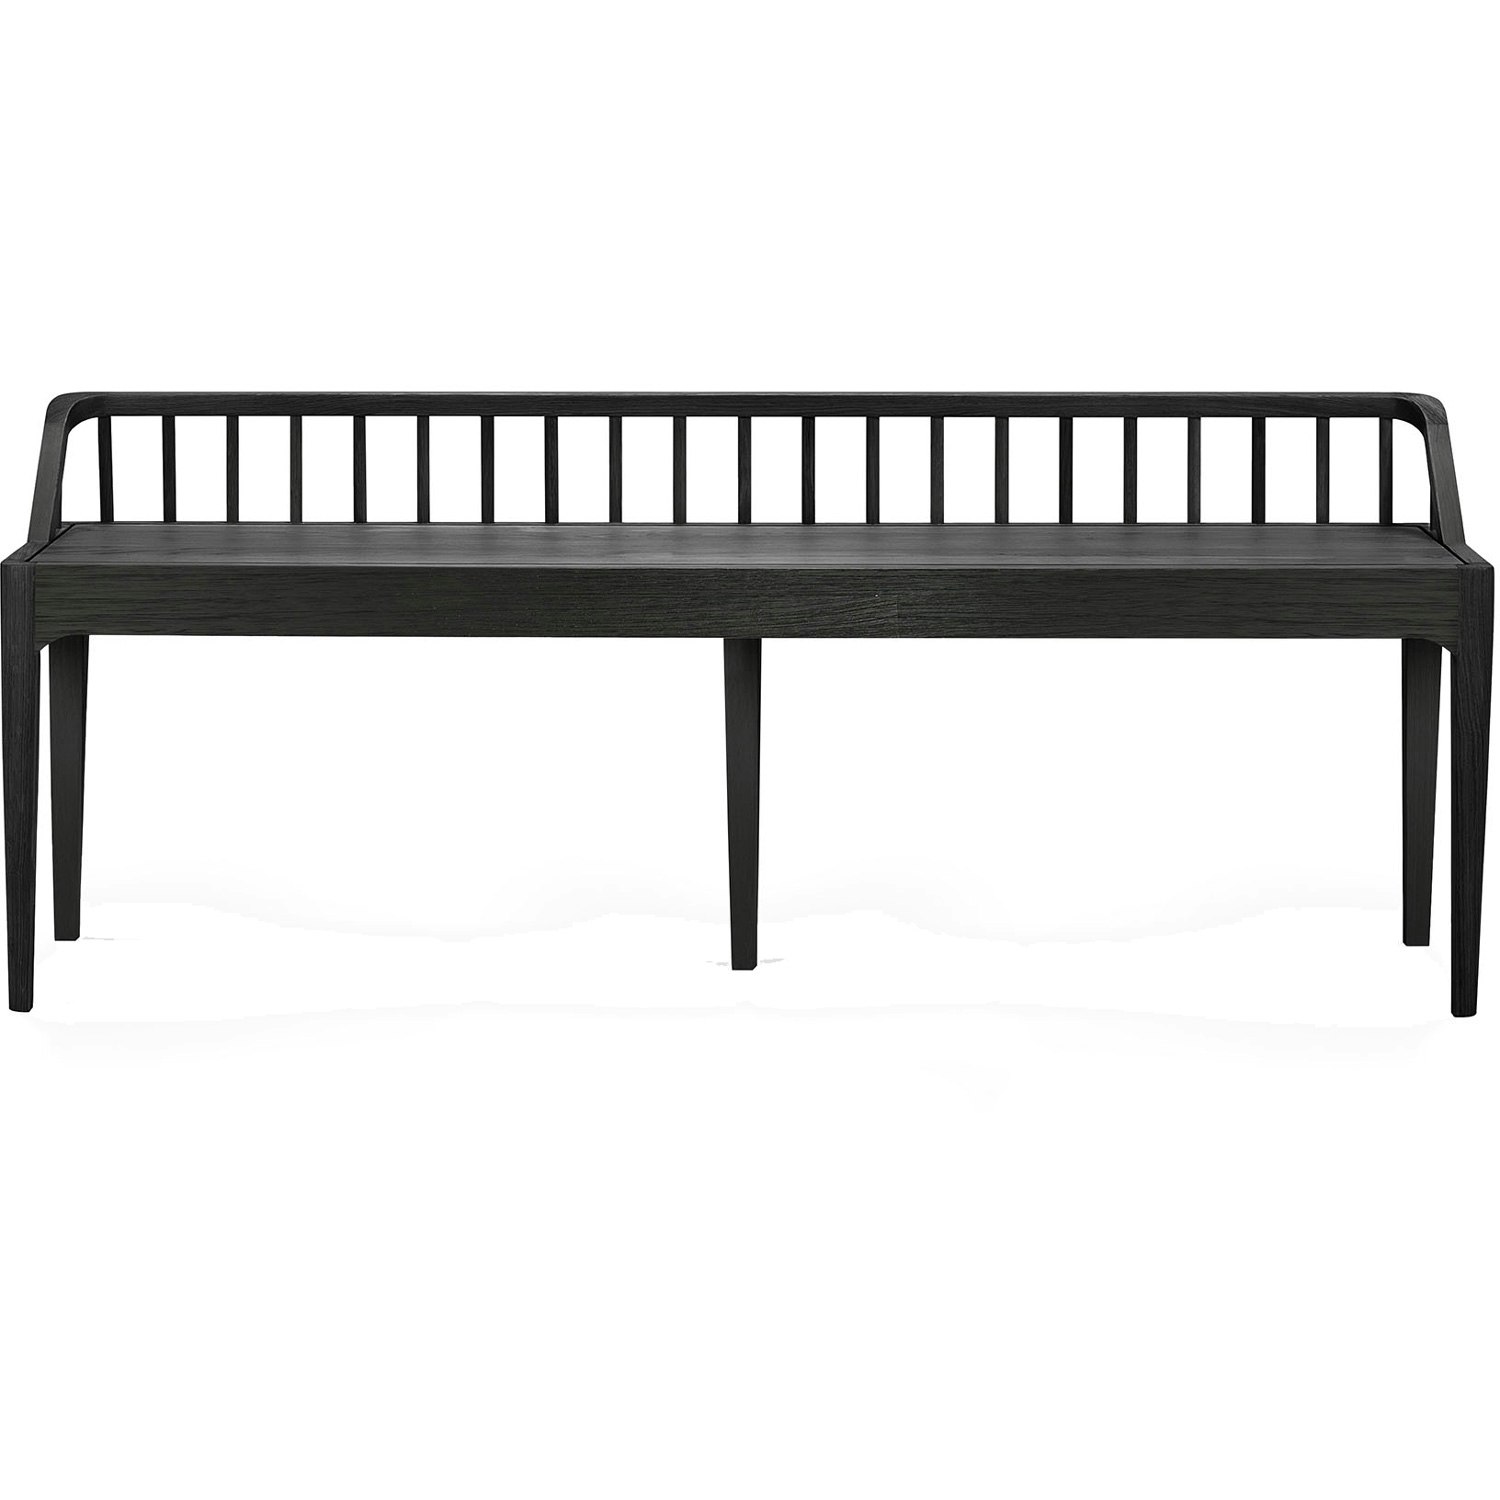 https://royaldesign.com/image/11/ethnicraft-oak-spindle-bench-black-0